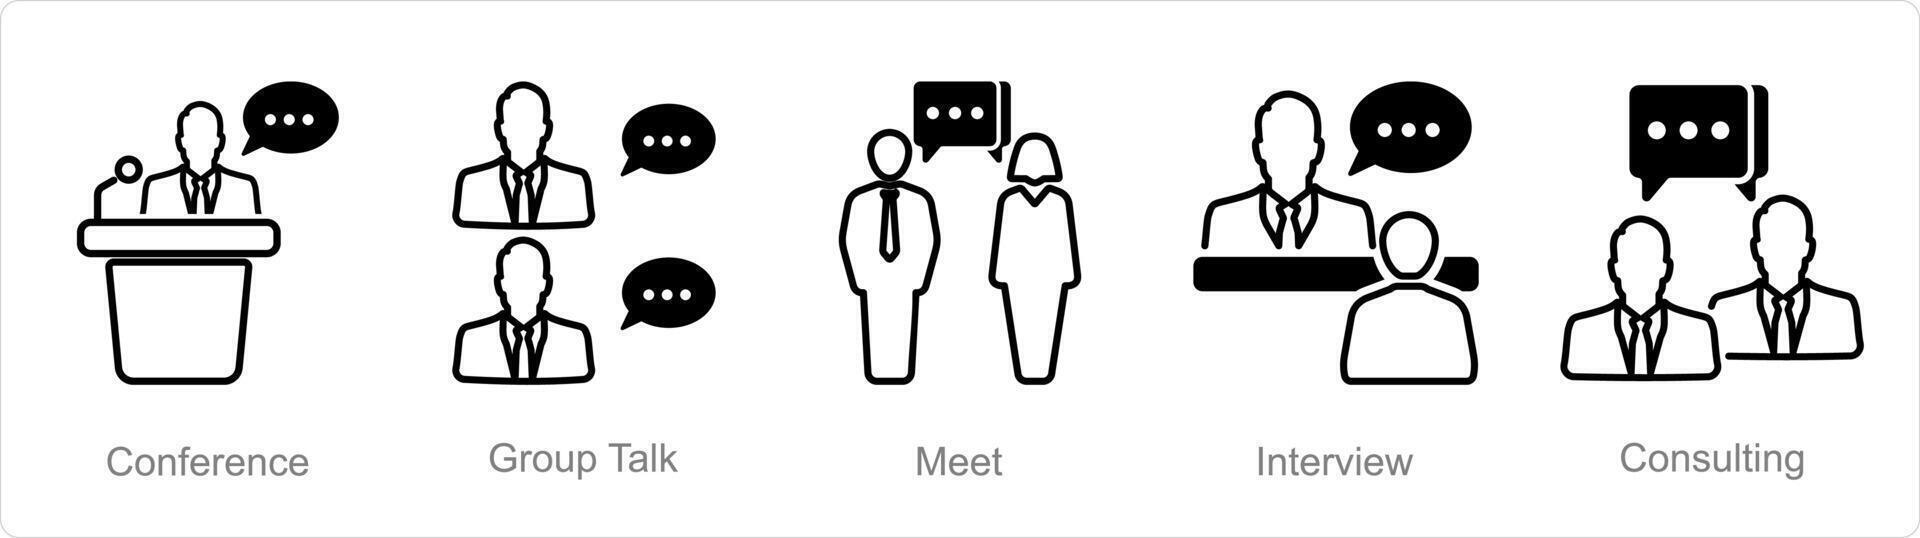 en uppsättning av 5 möte ikoner som konferens, grupp prata, träffa vektor